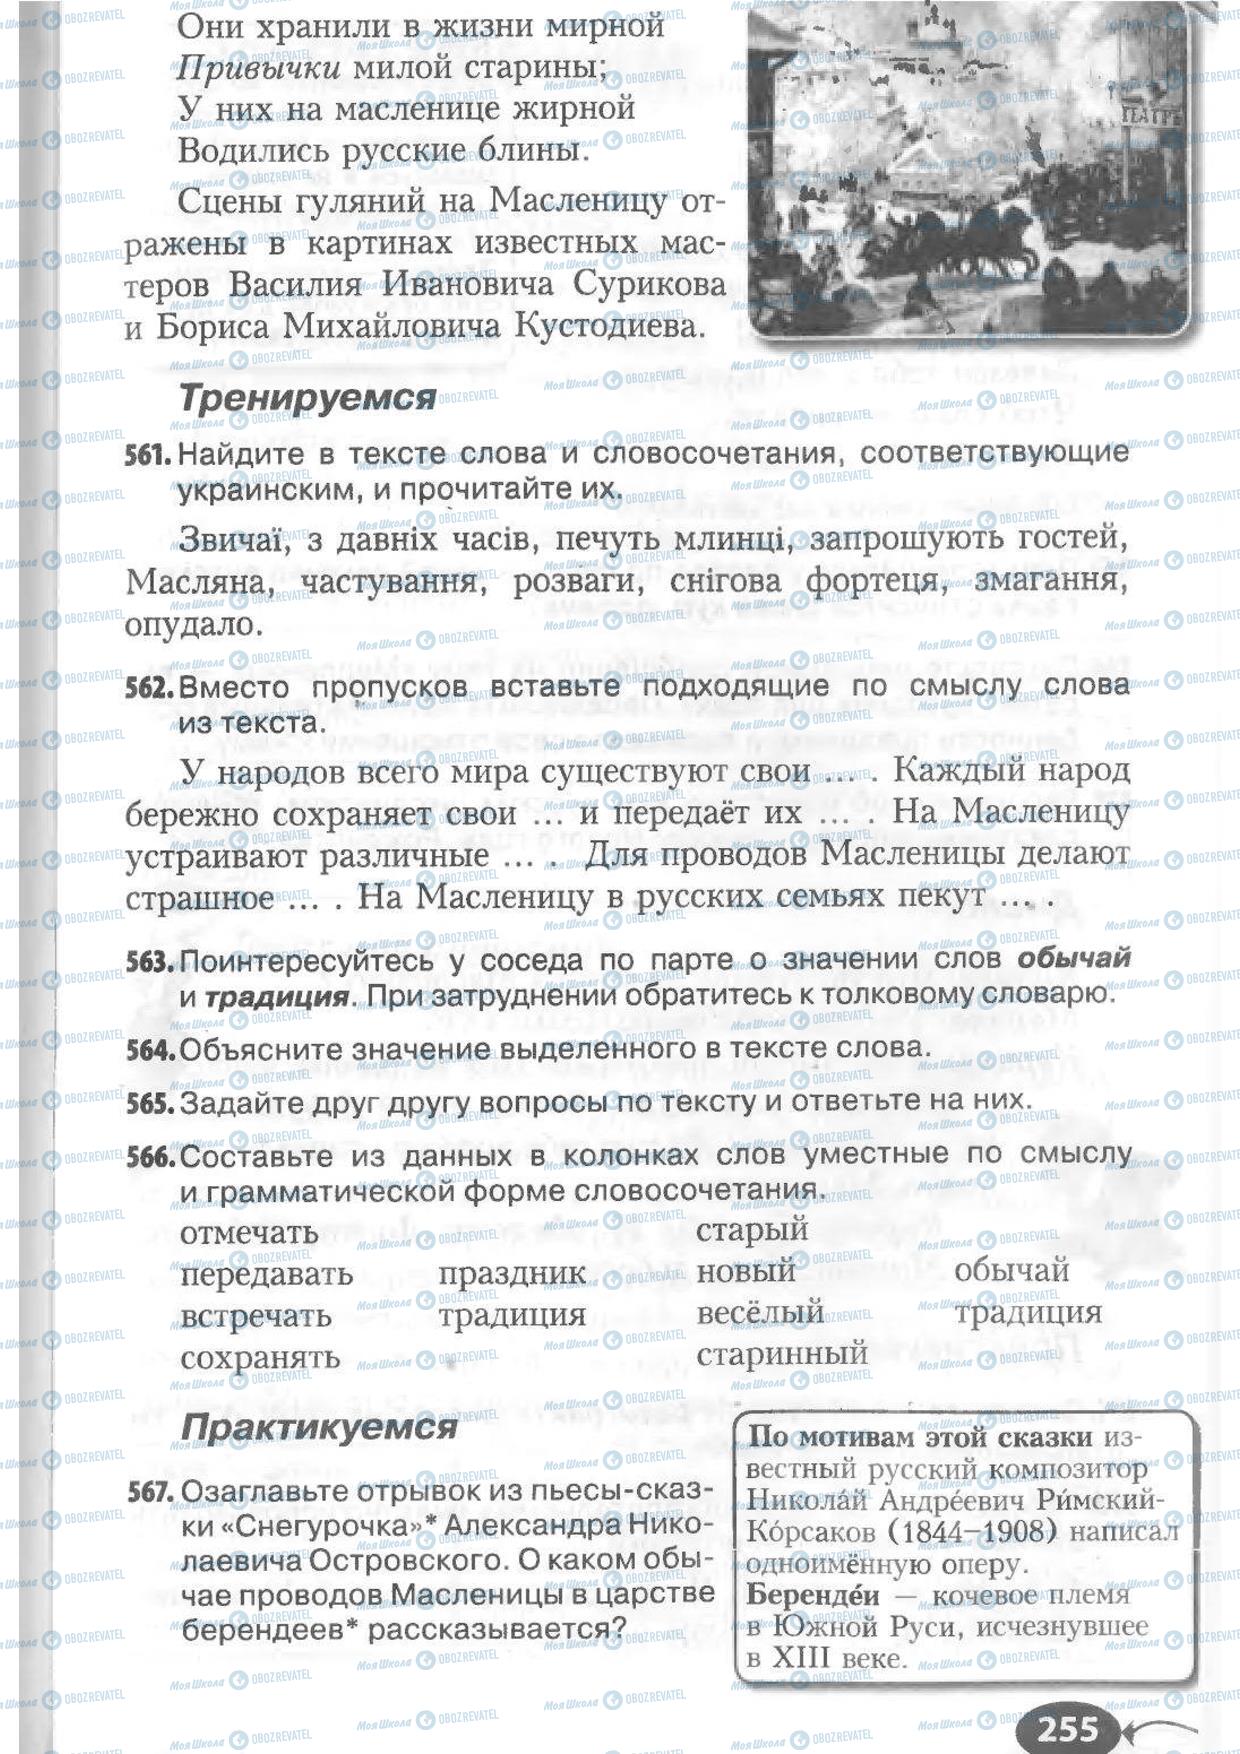 Підручники Російська мова 6 клас сторінка 255